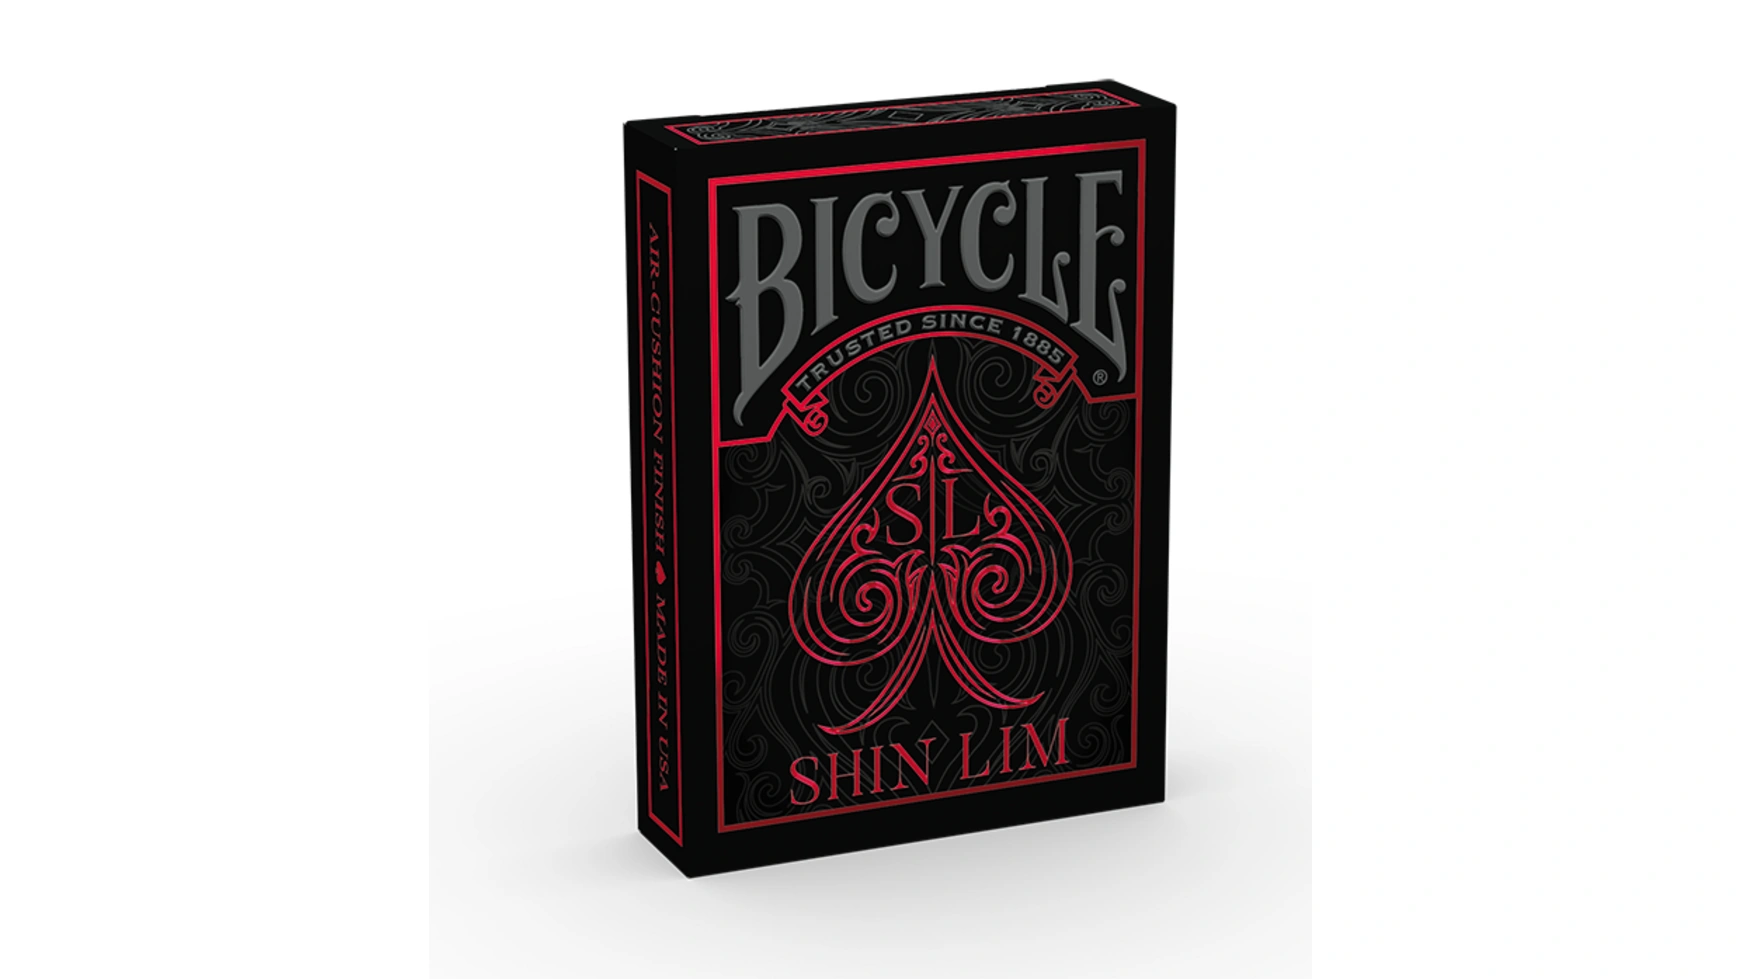 Bicycle Шин Лим магические трюки плавающие аксессуары реквизит для сцены трюк магия игрушки шутка классика dvd gimmick